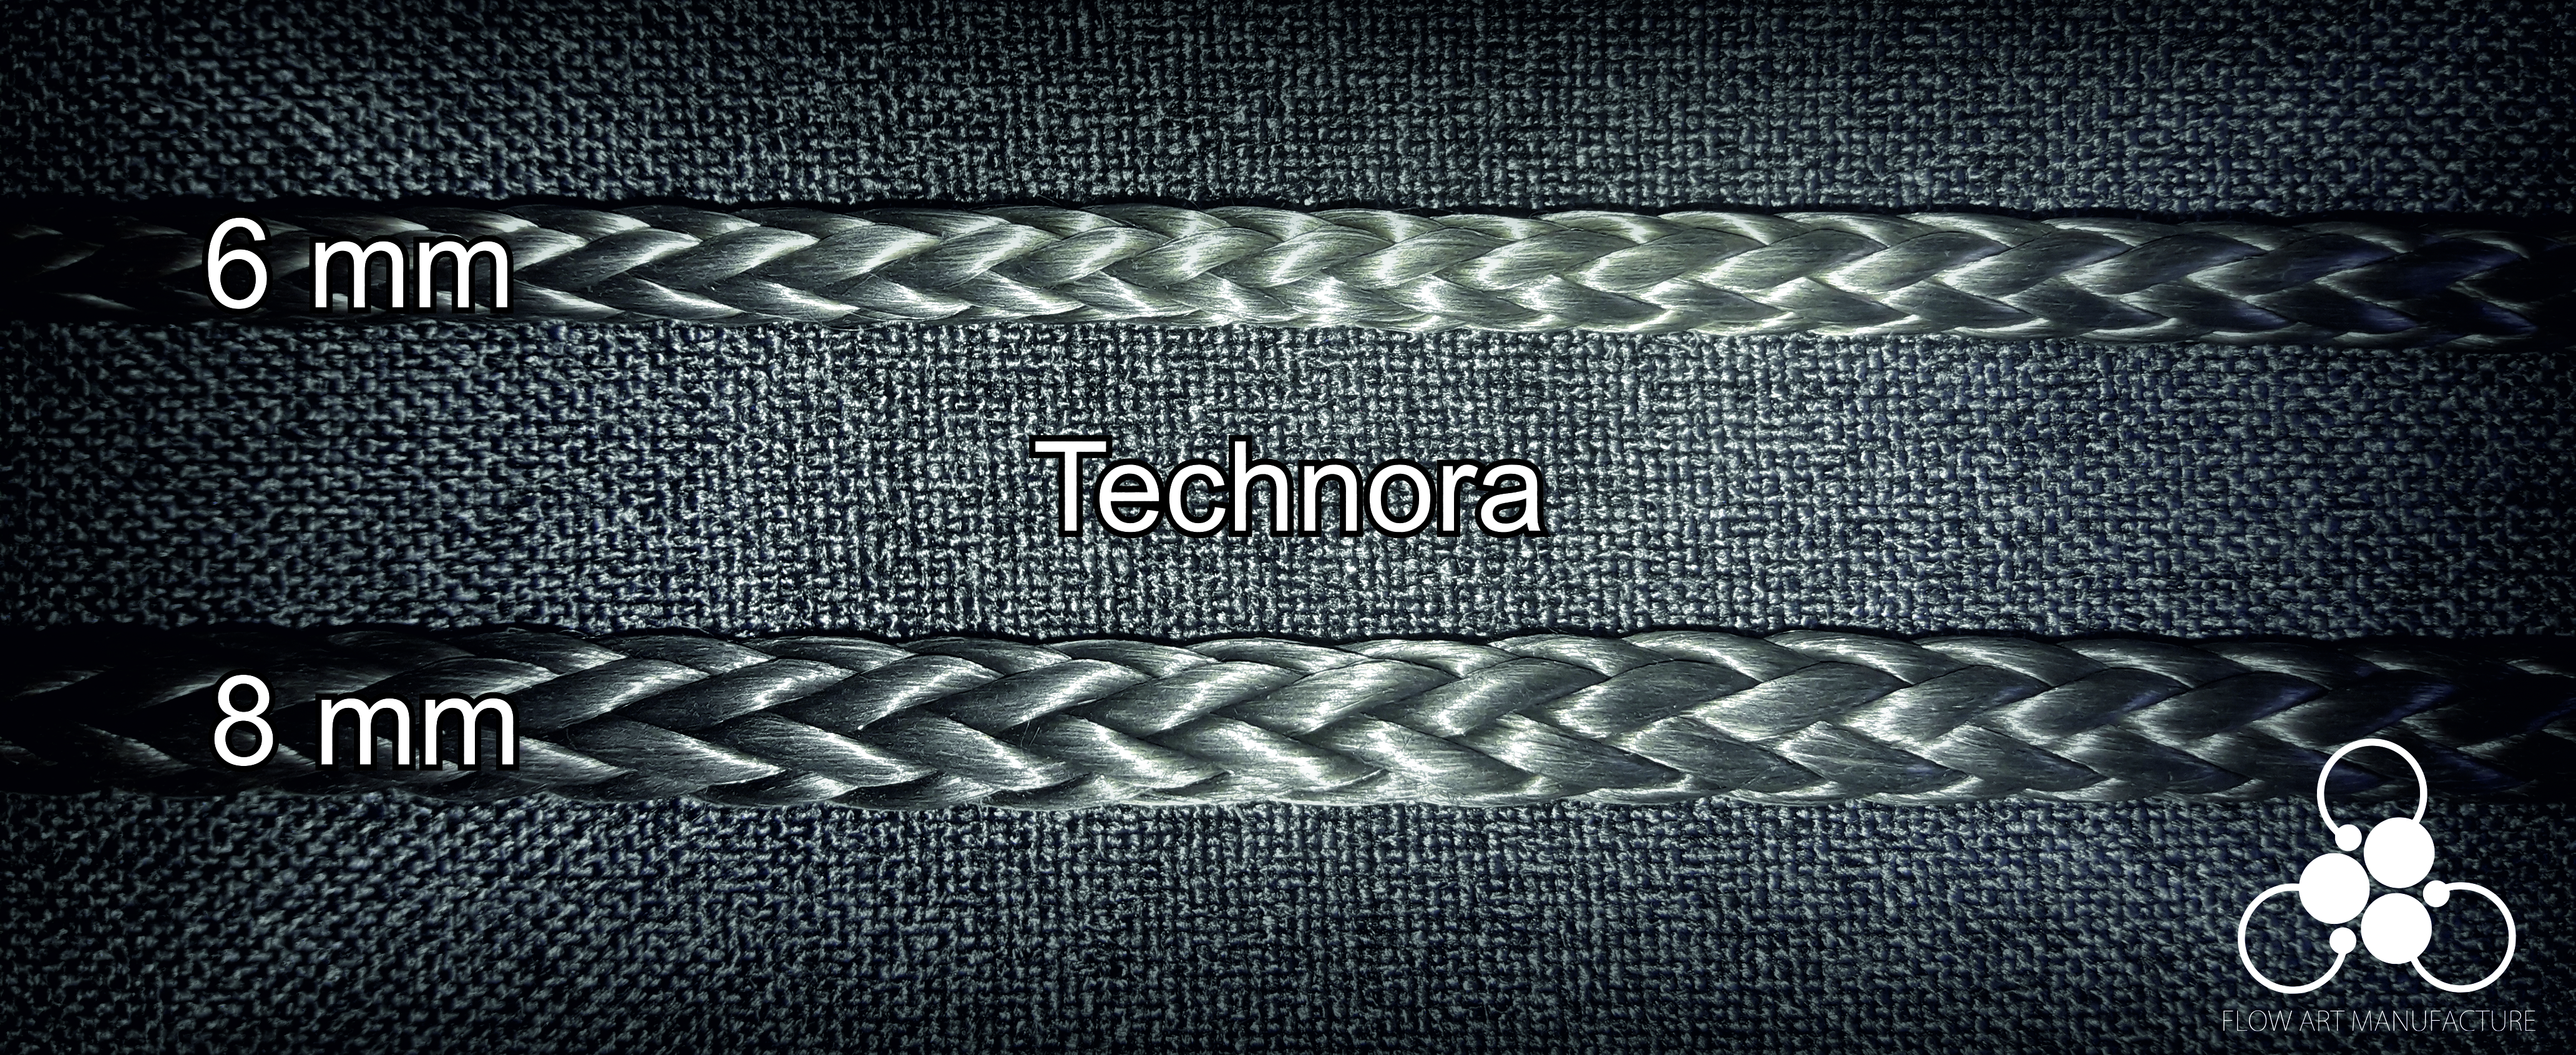 Technora rope